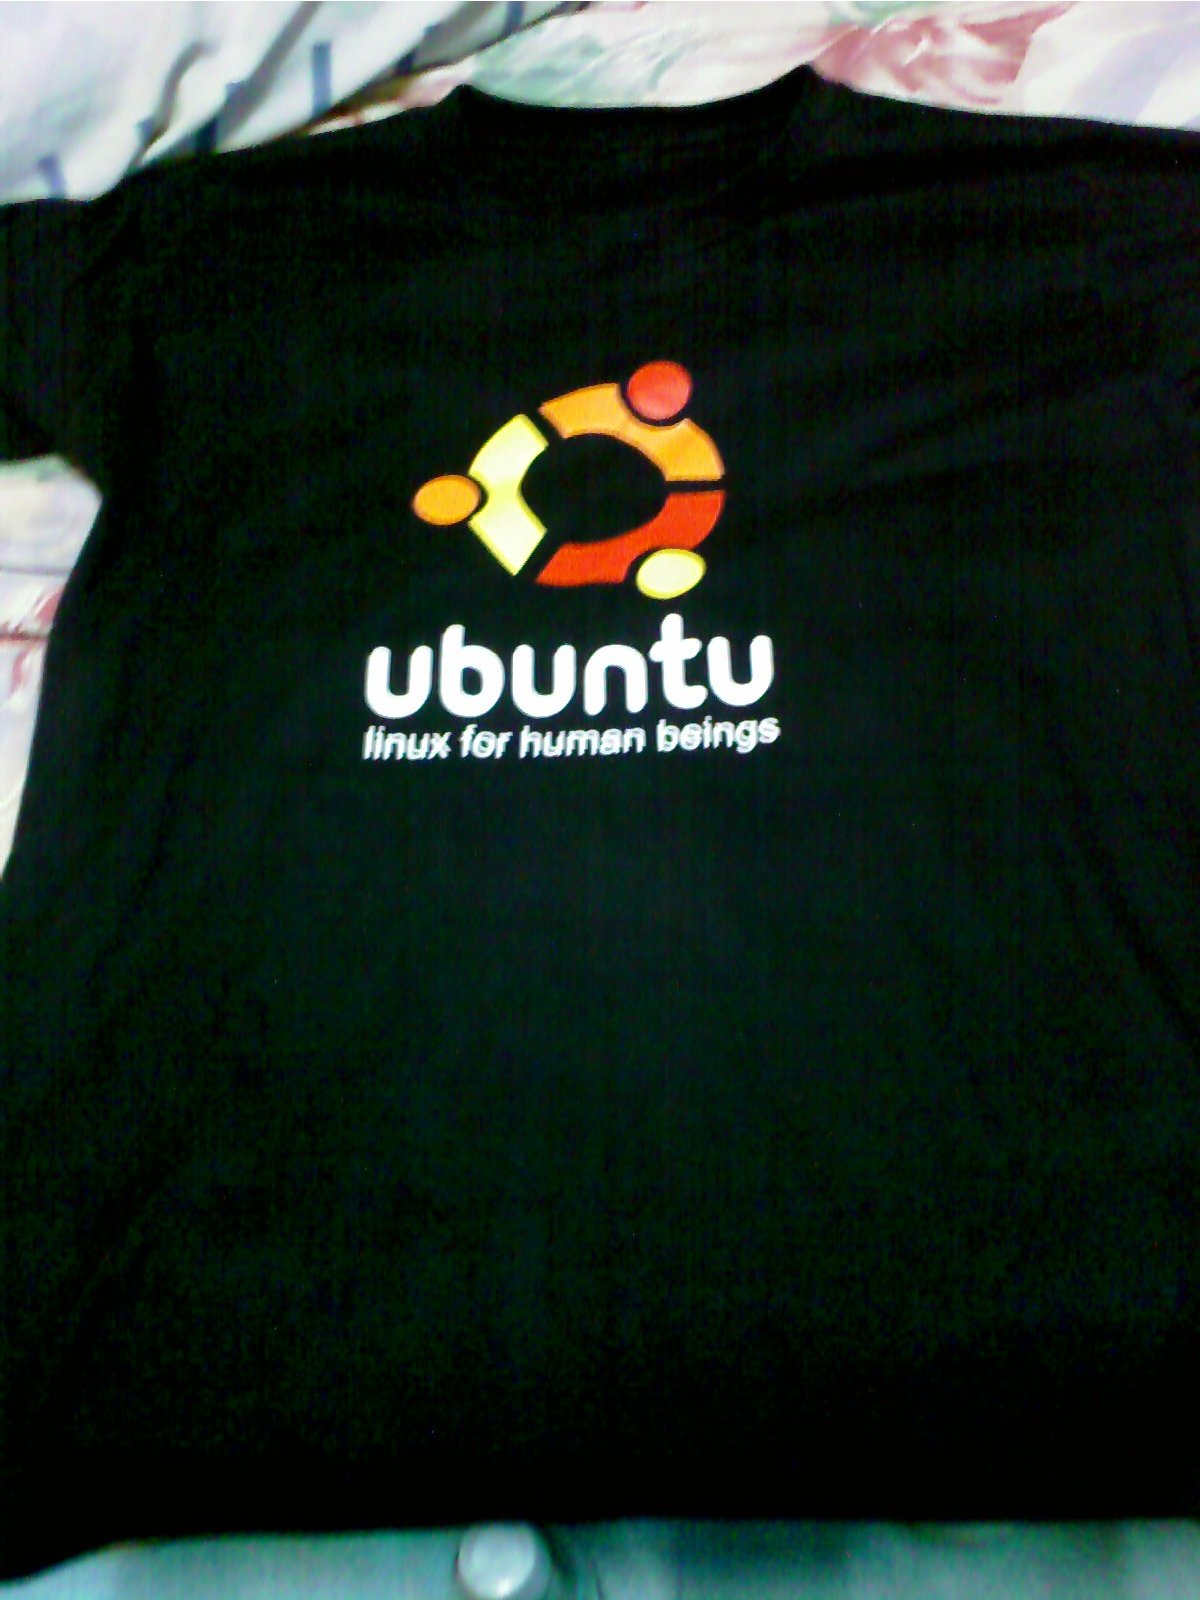 [ubuntu-v.1.0-h.jpg]